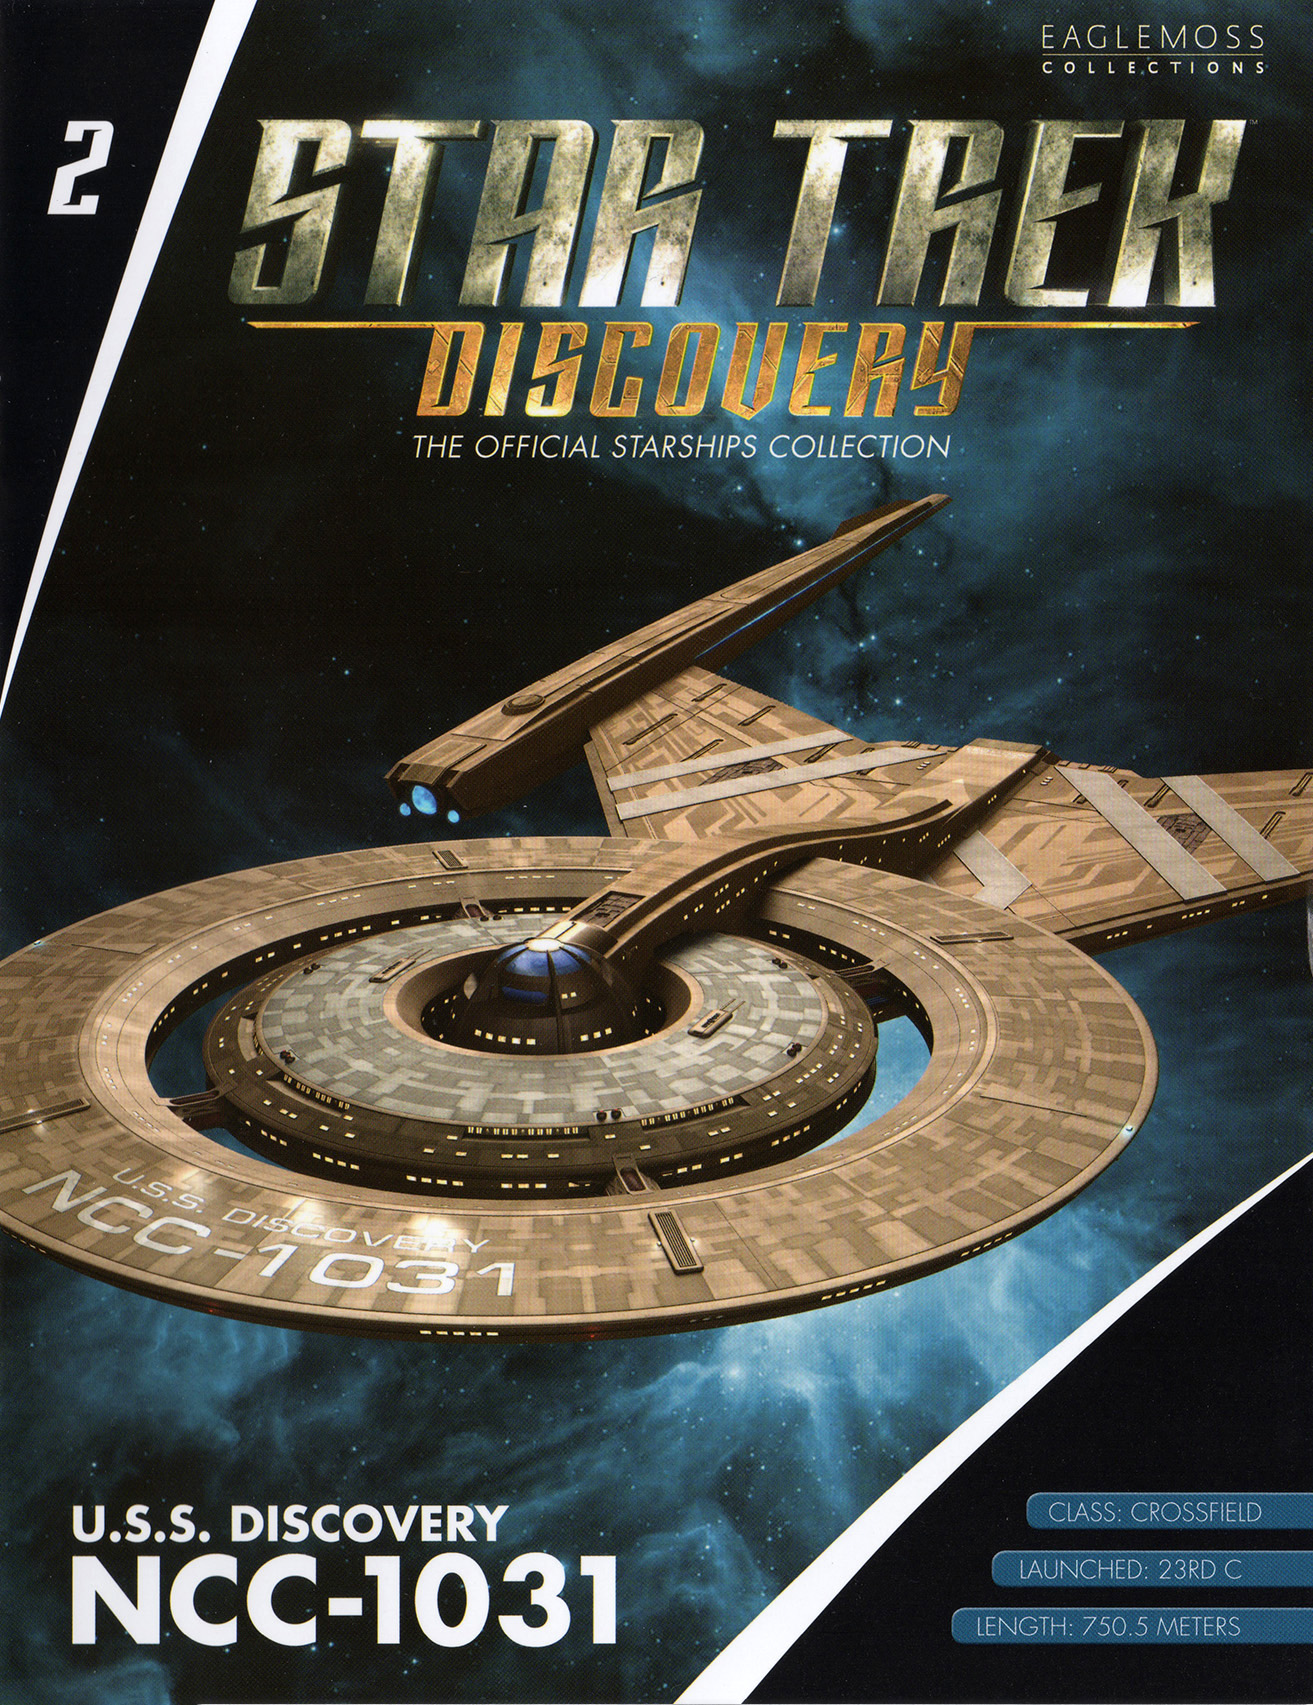 Eaglemoss Star Trek Starships Discovery Issue 2